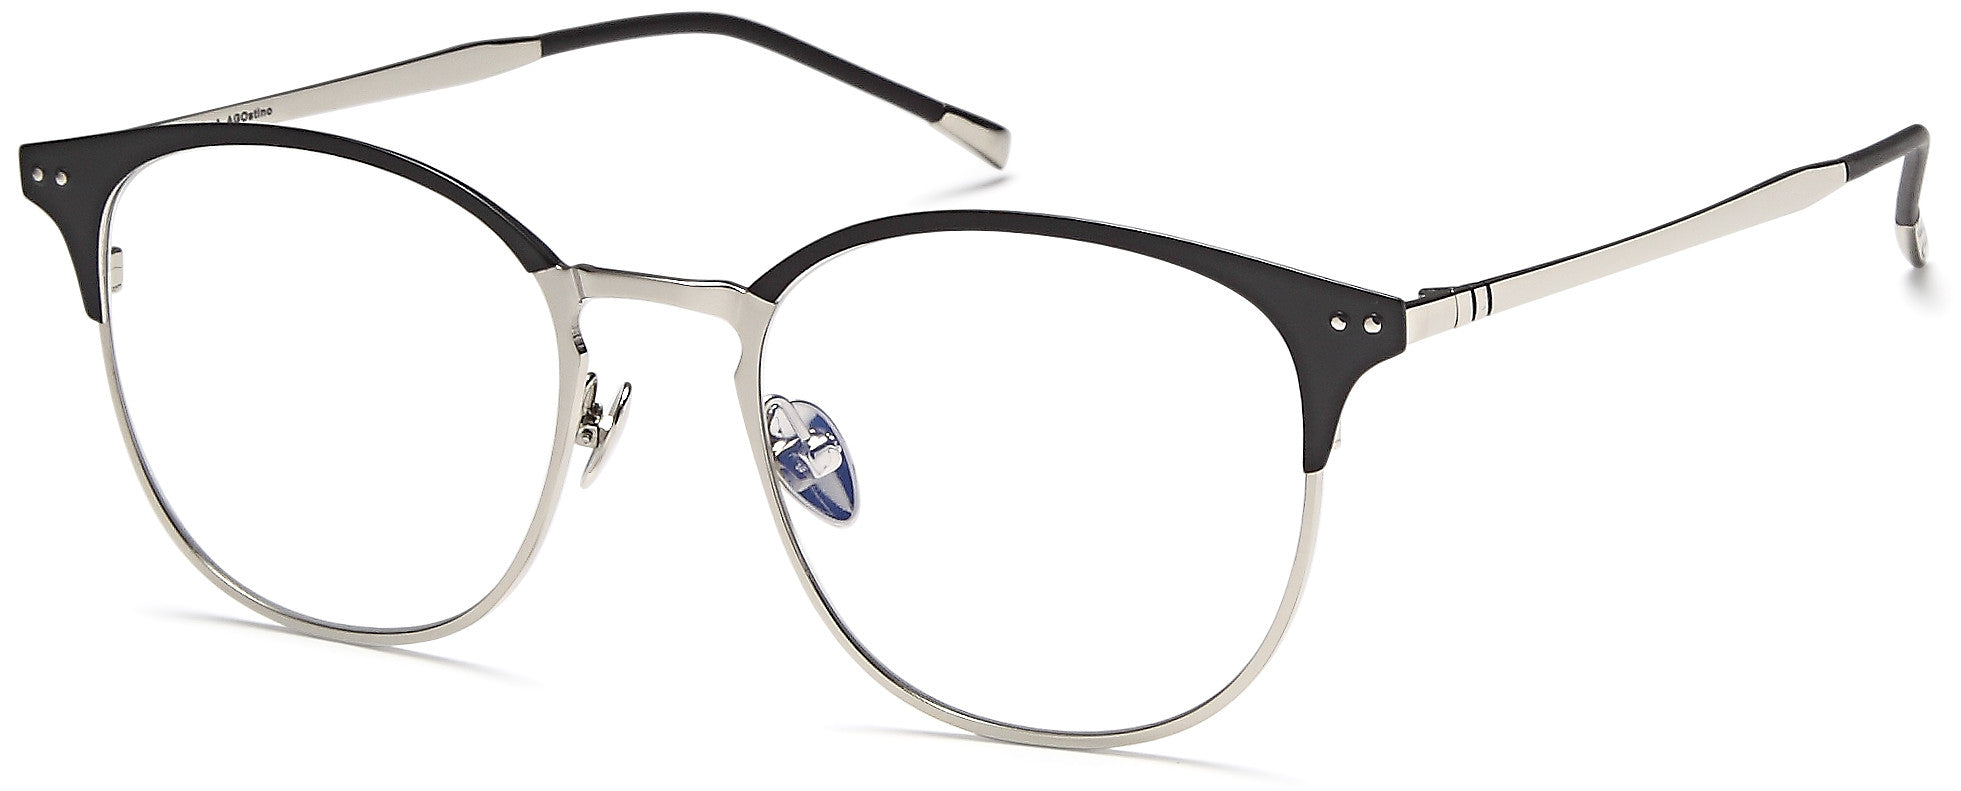 AGO Eyeglasses MF90004